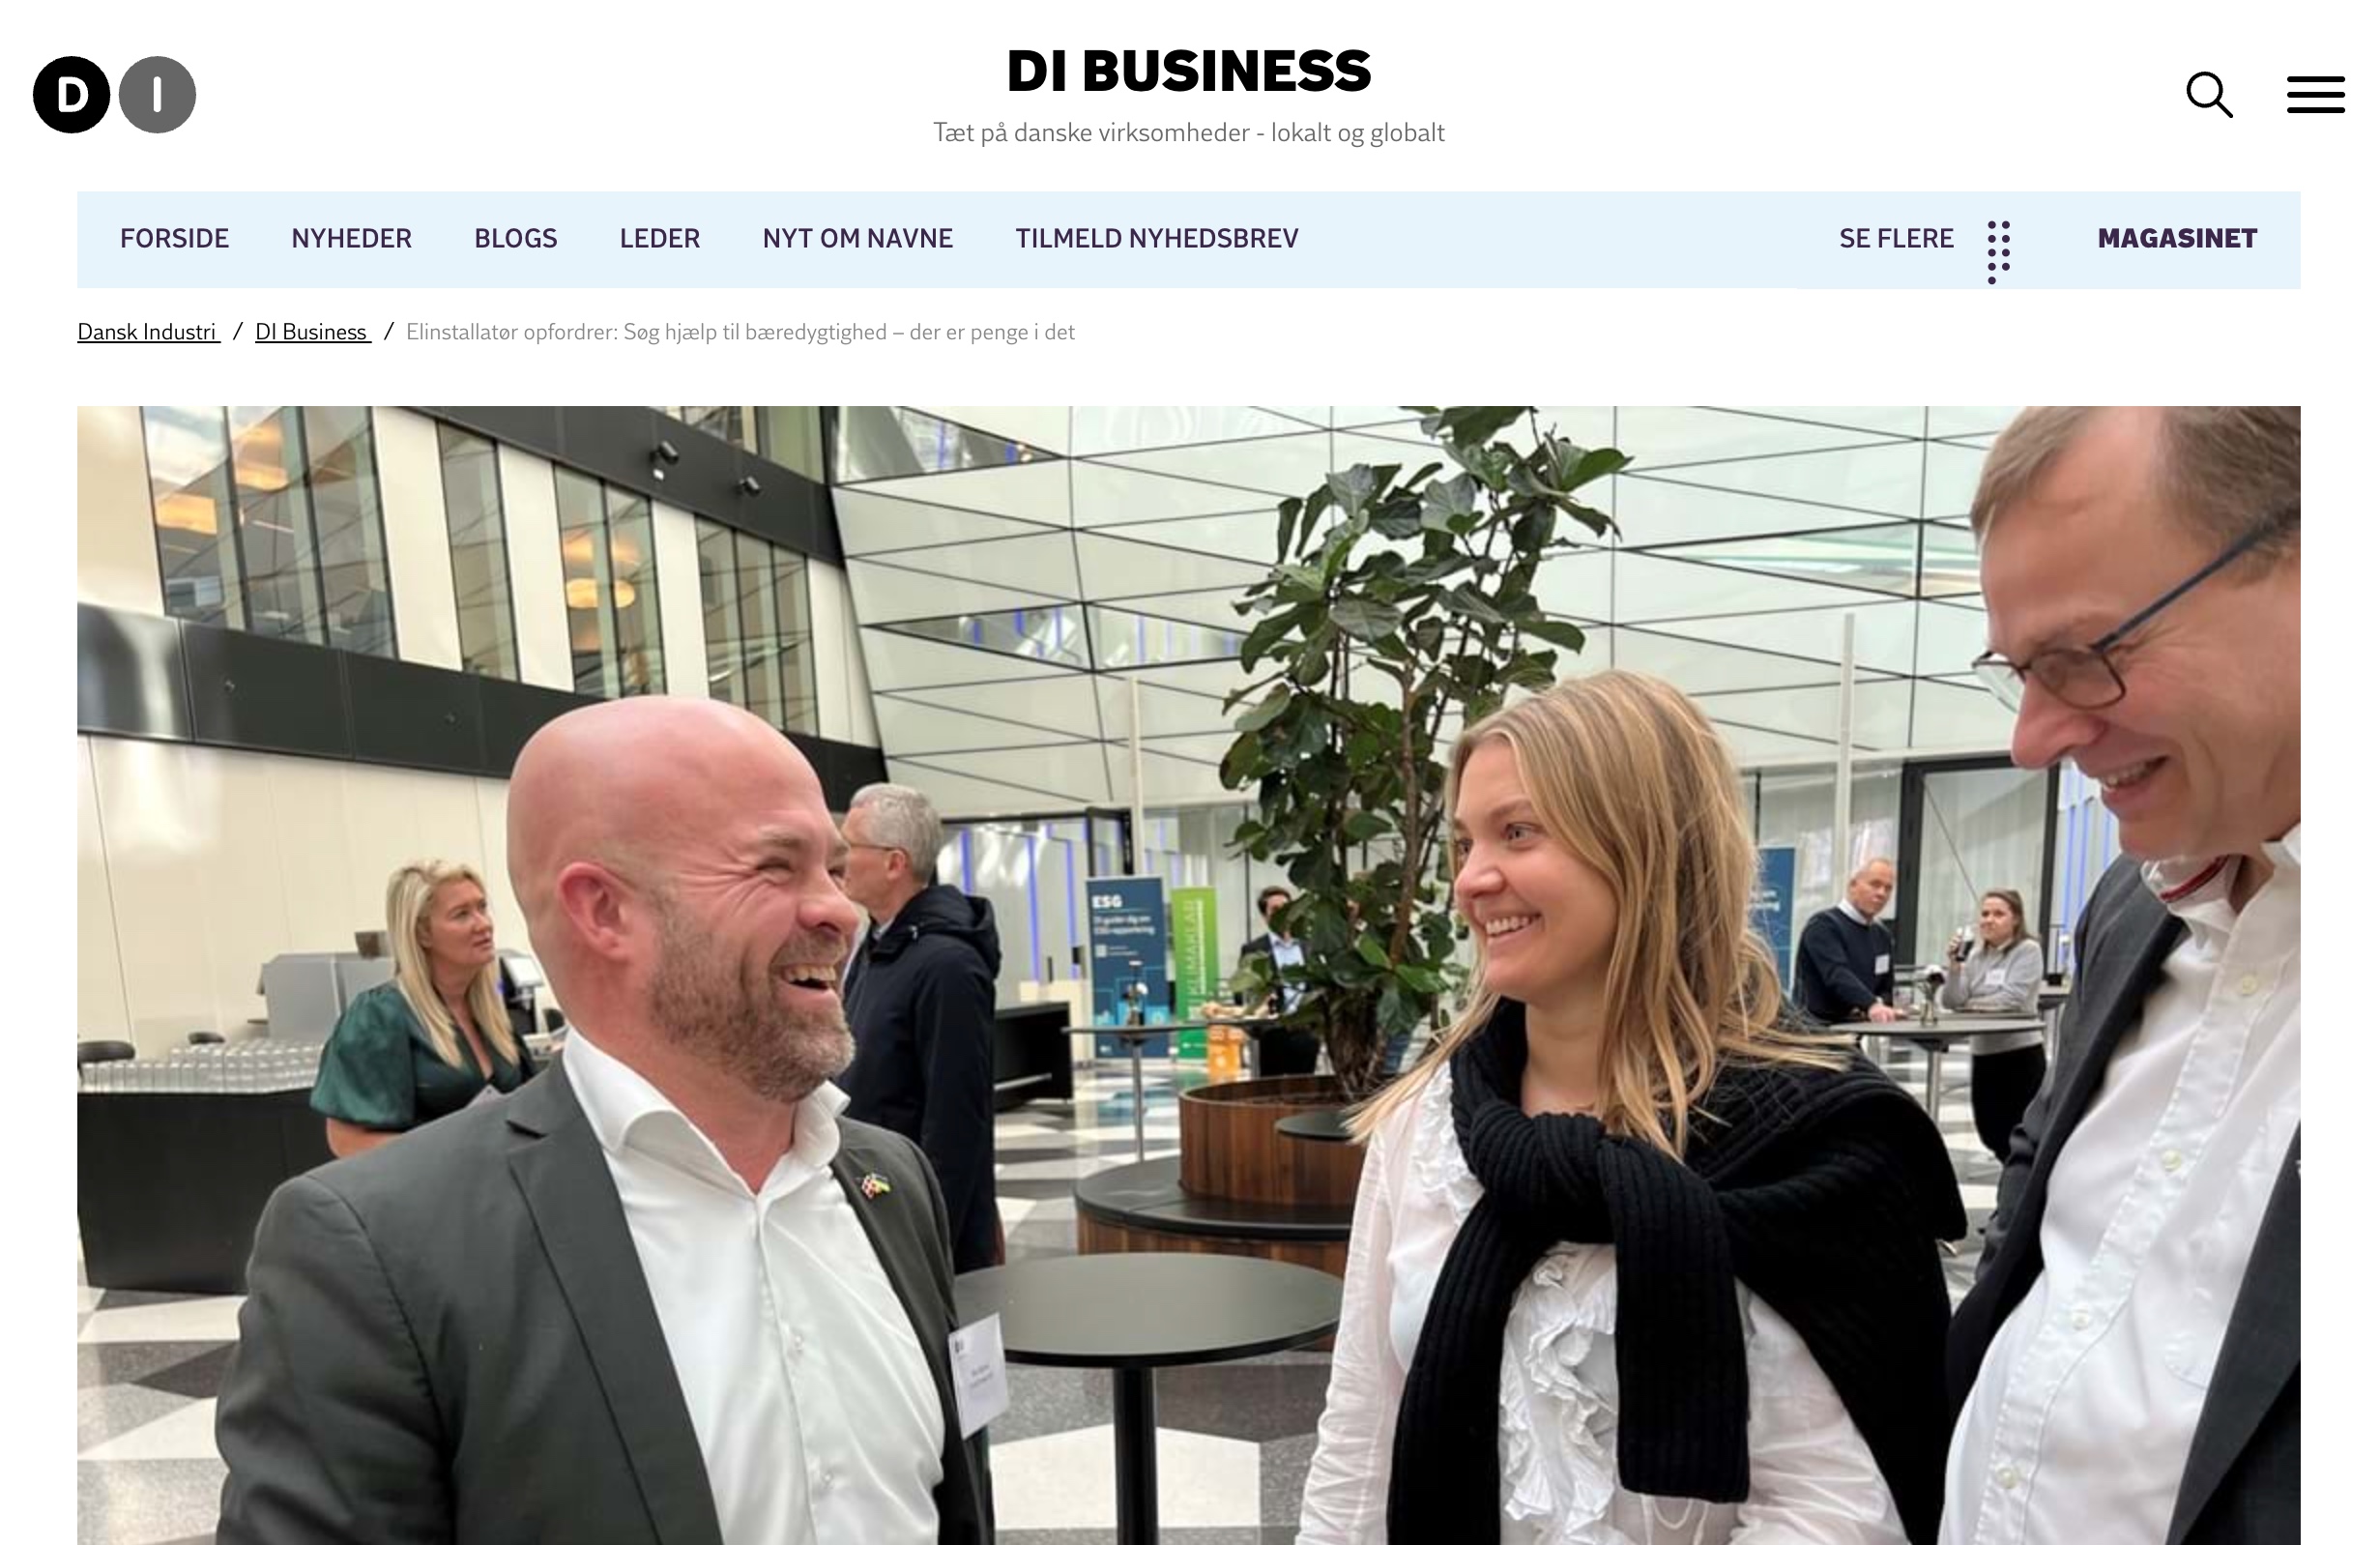 rico-dansk-industri-artikel-header